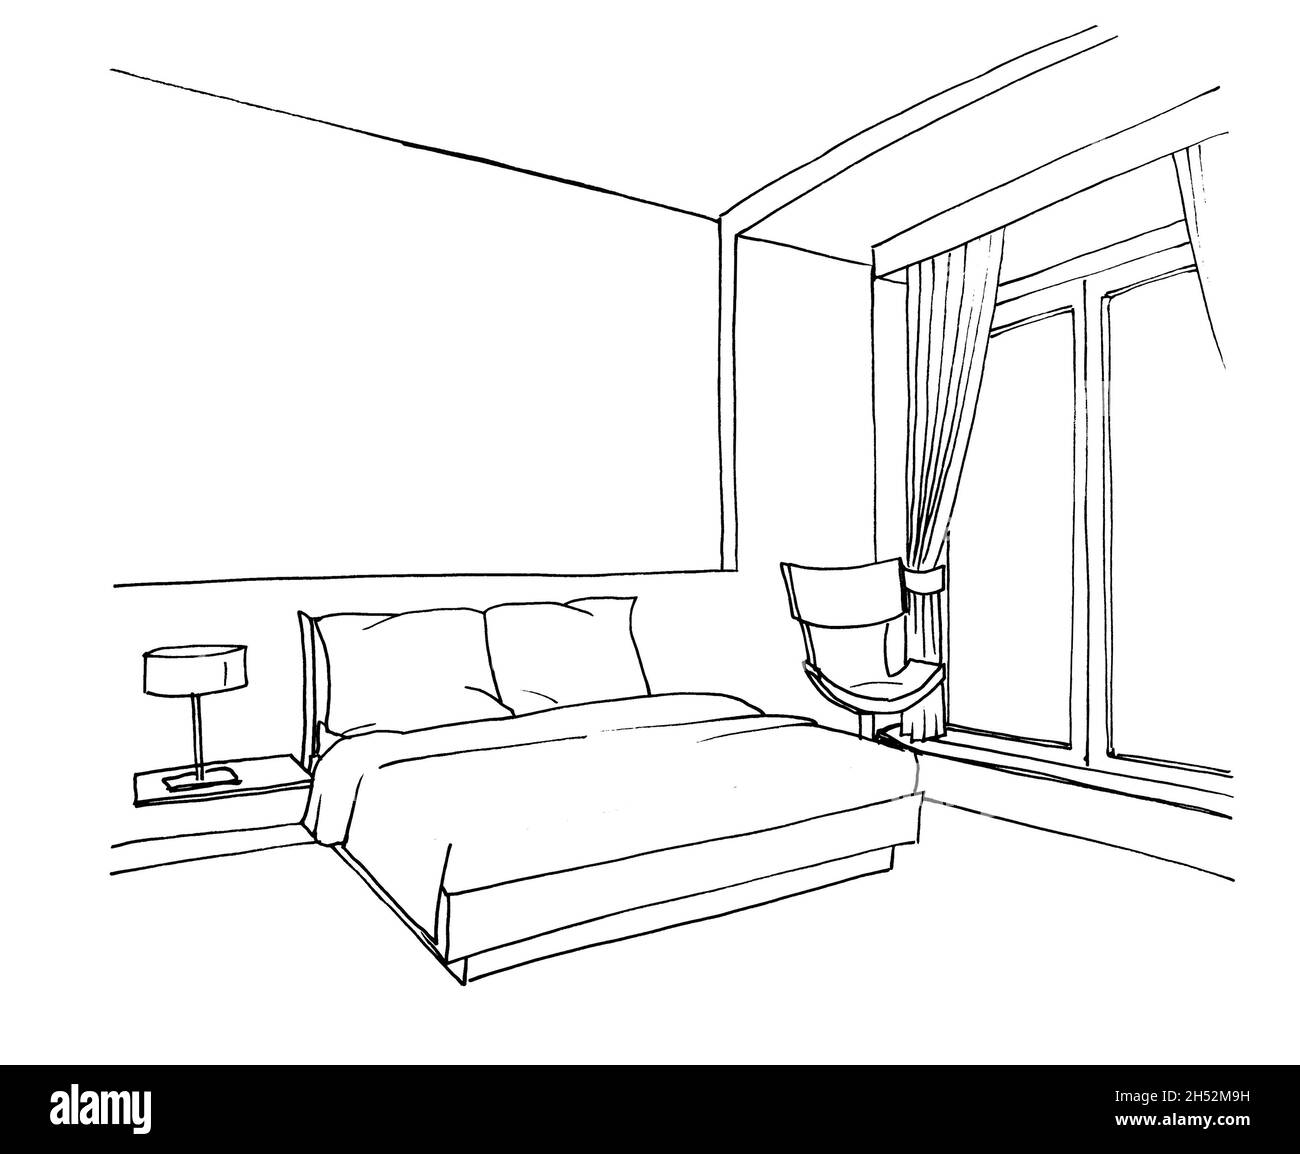 Make interior illustration of bedroom hand drawn by Maan_meraki18 | Fiverr